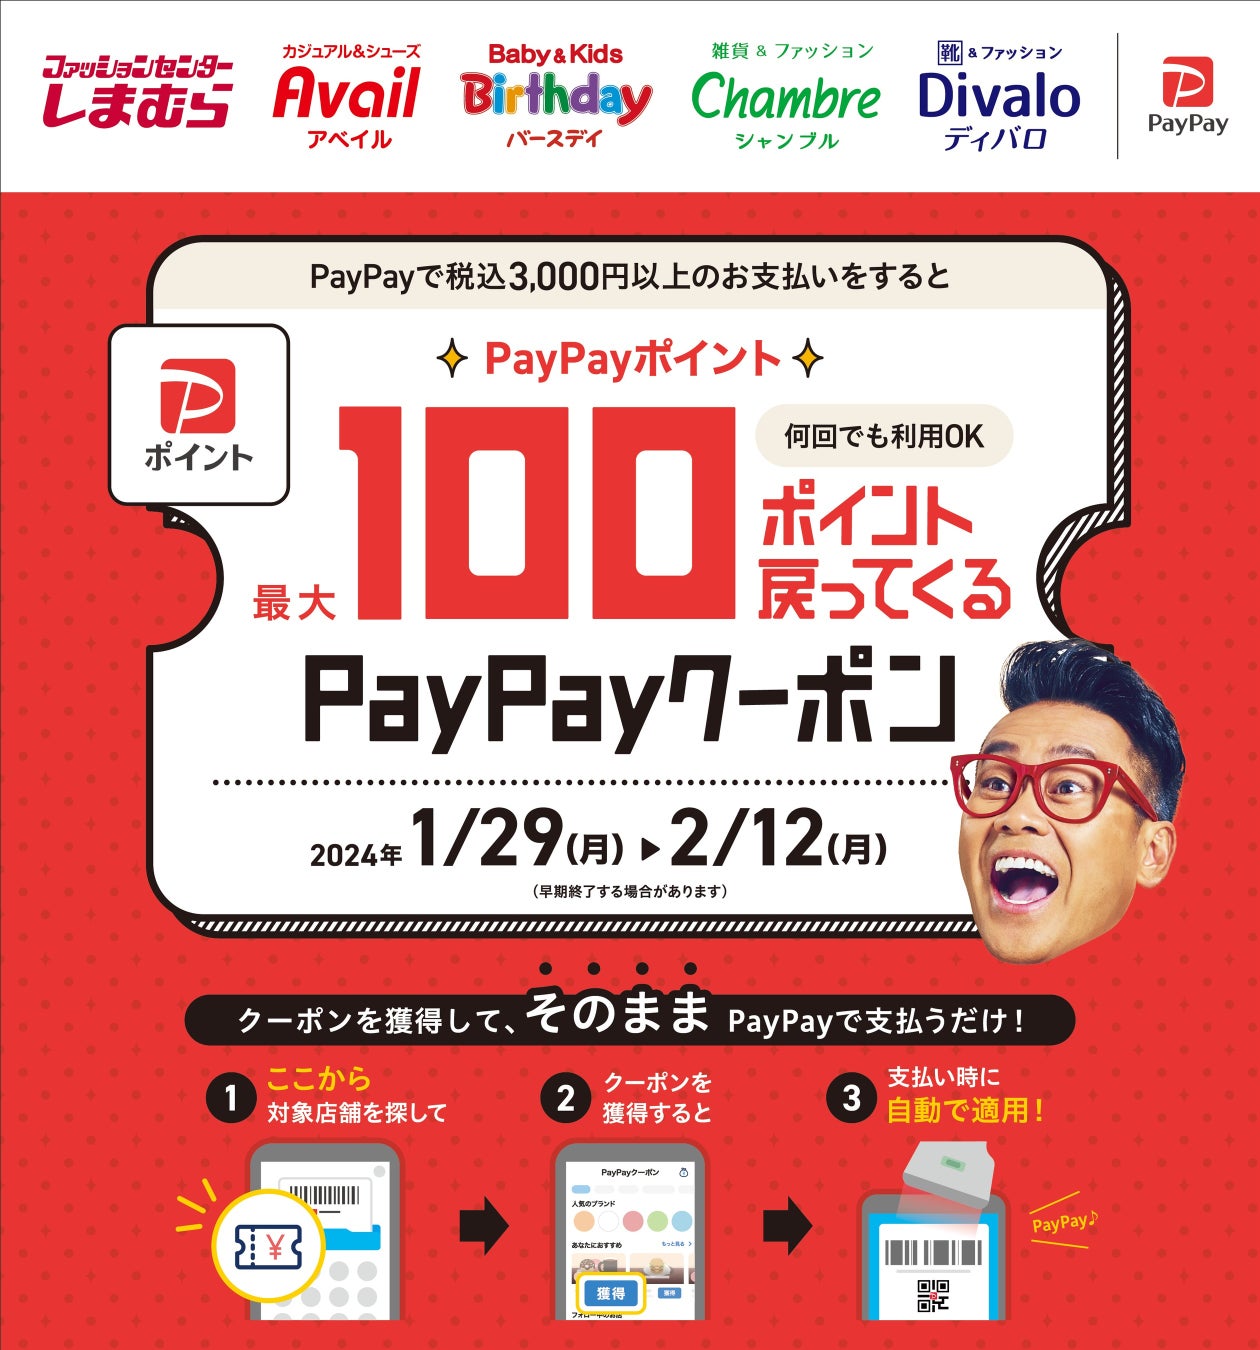 1月29日(月)より、しまむらグループ各店舗で「PayPayポイント最大100ポイント戻ってくるクーポン」キャンペー...